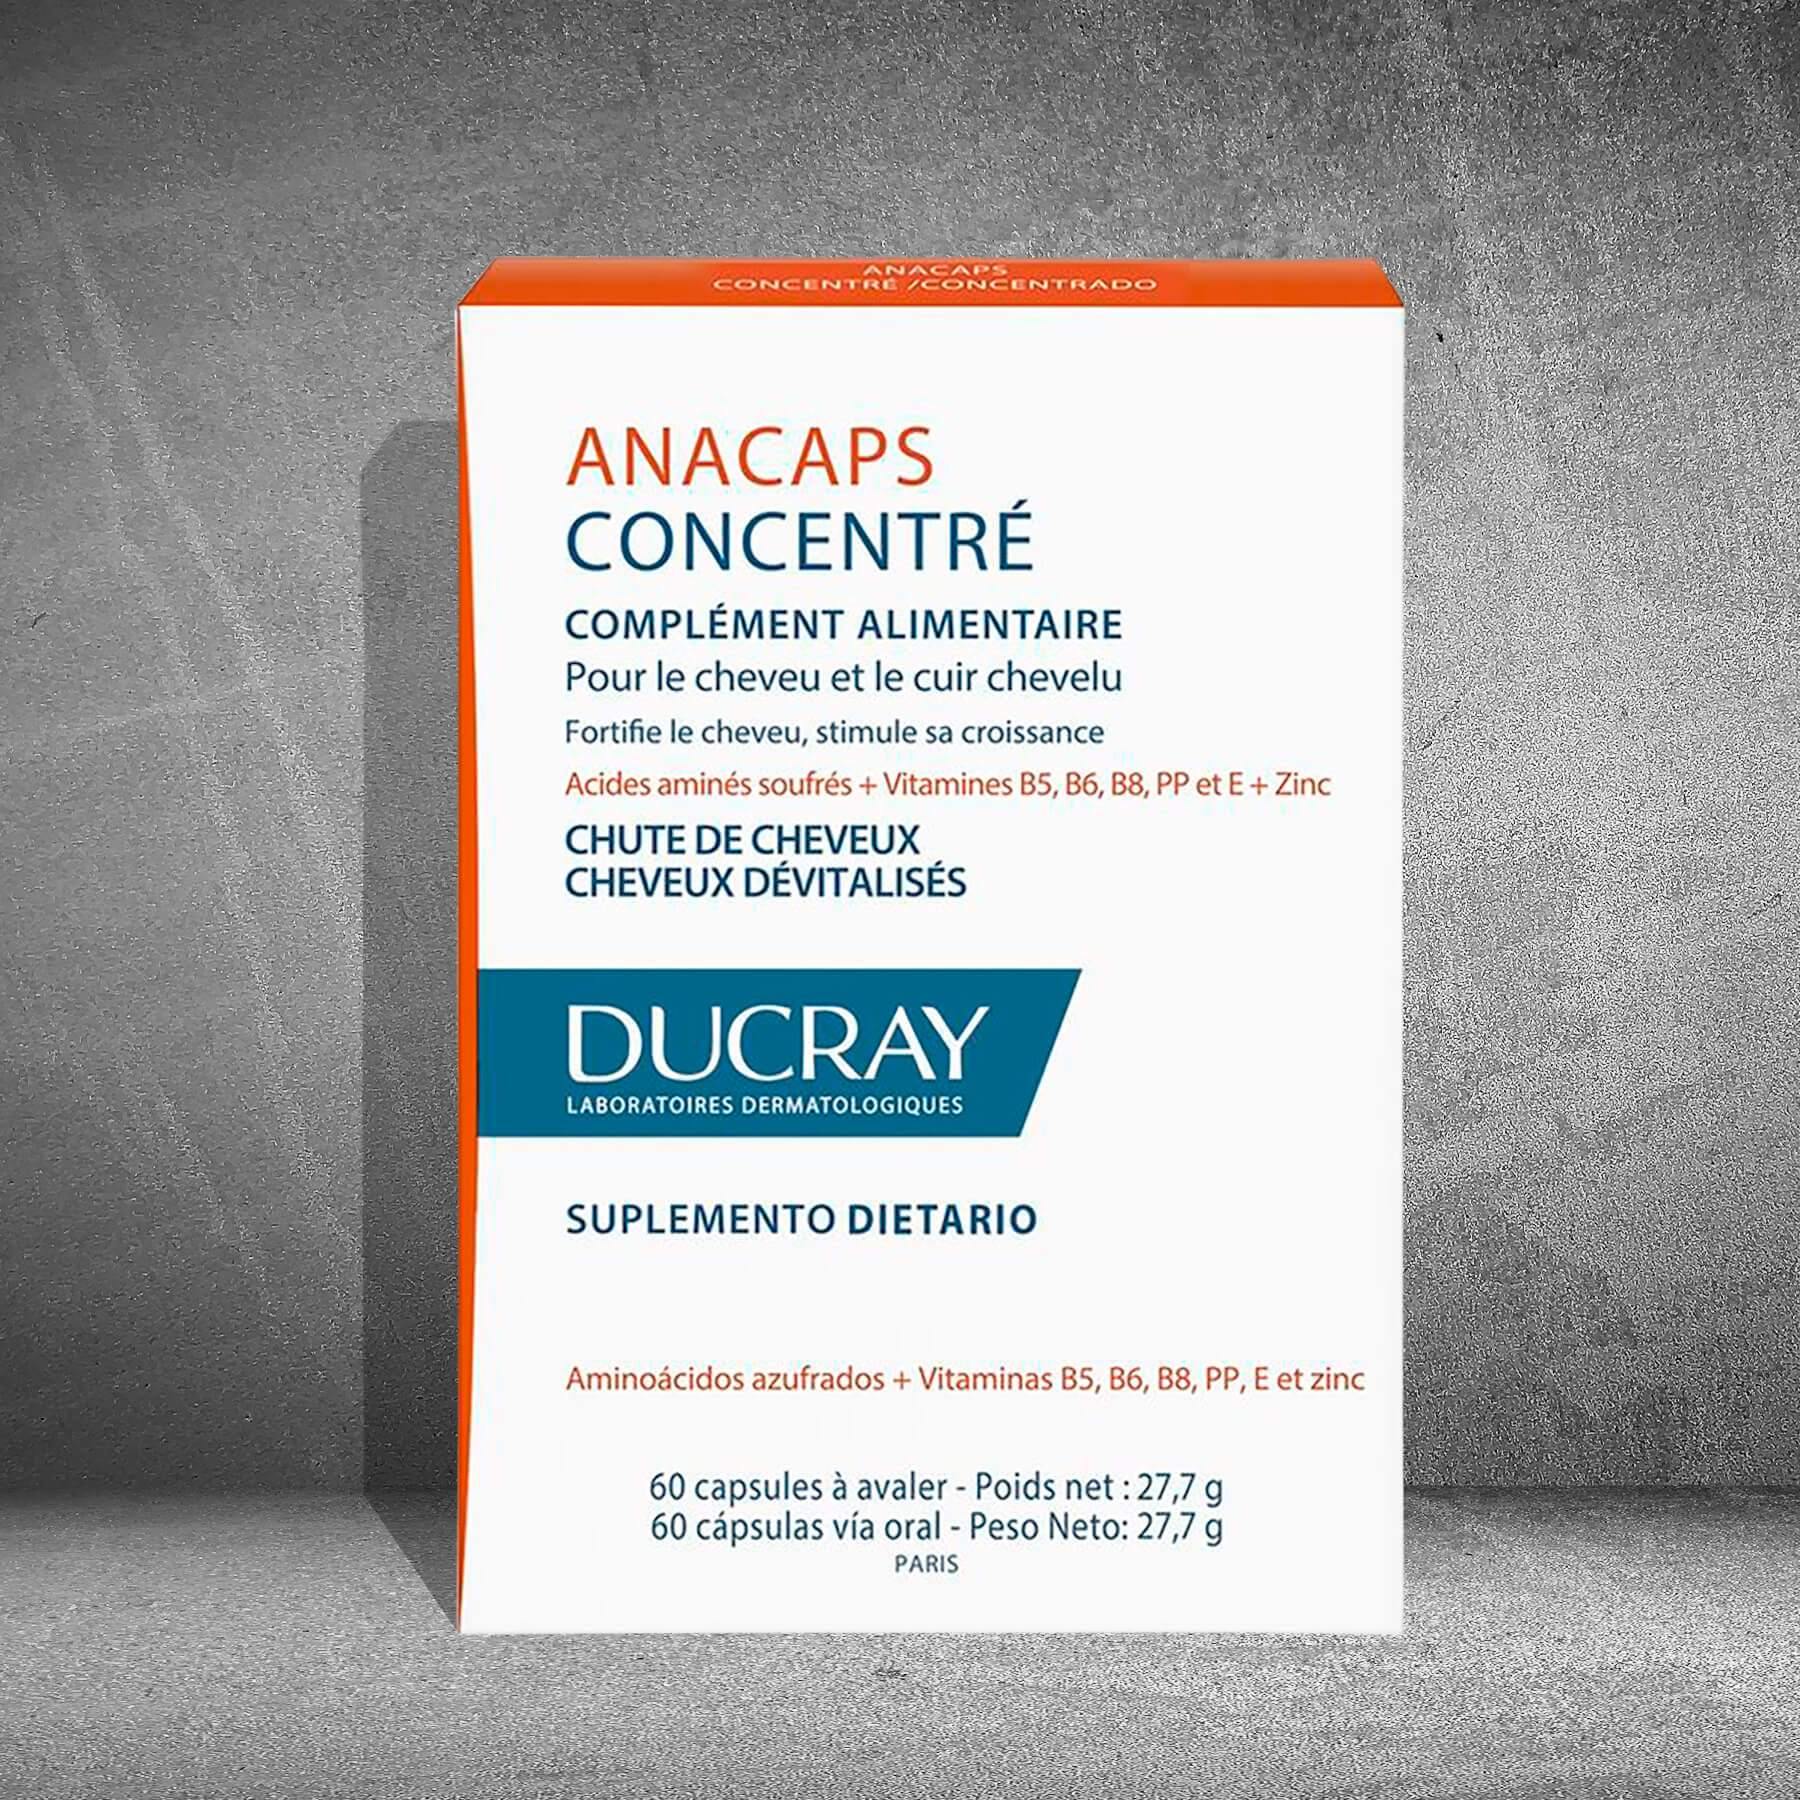 Anacaps Ducray 60 Cap - Pelo - Dermarket Colombia